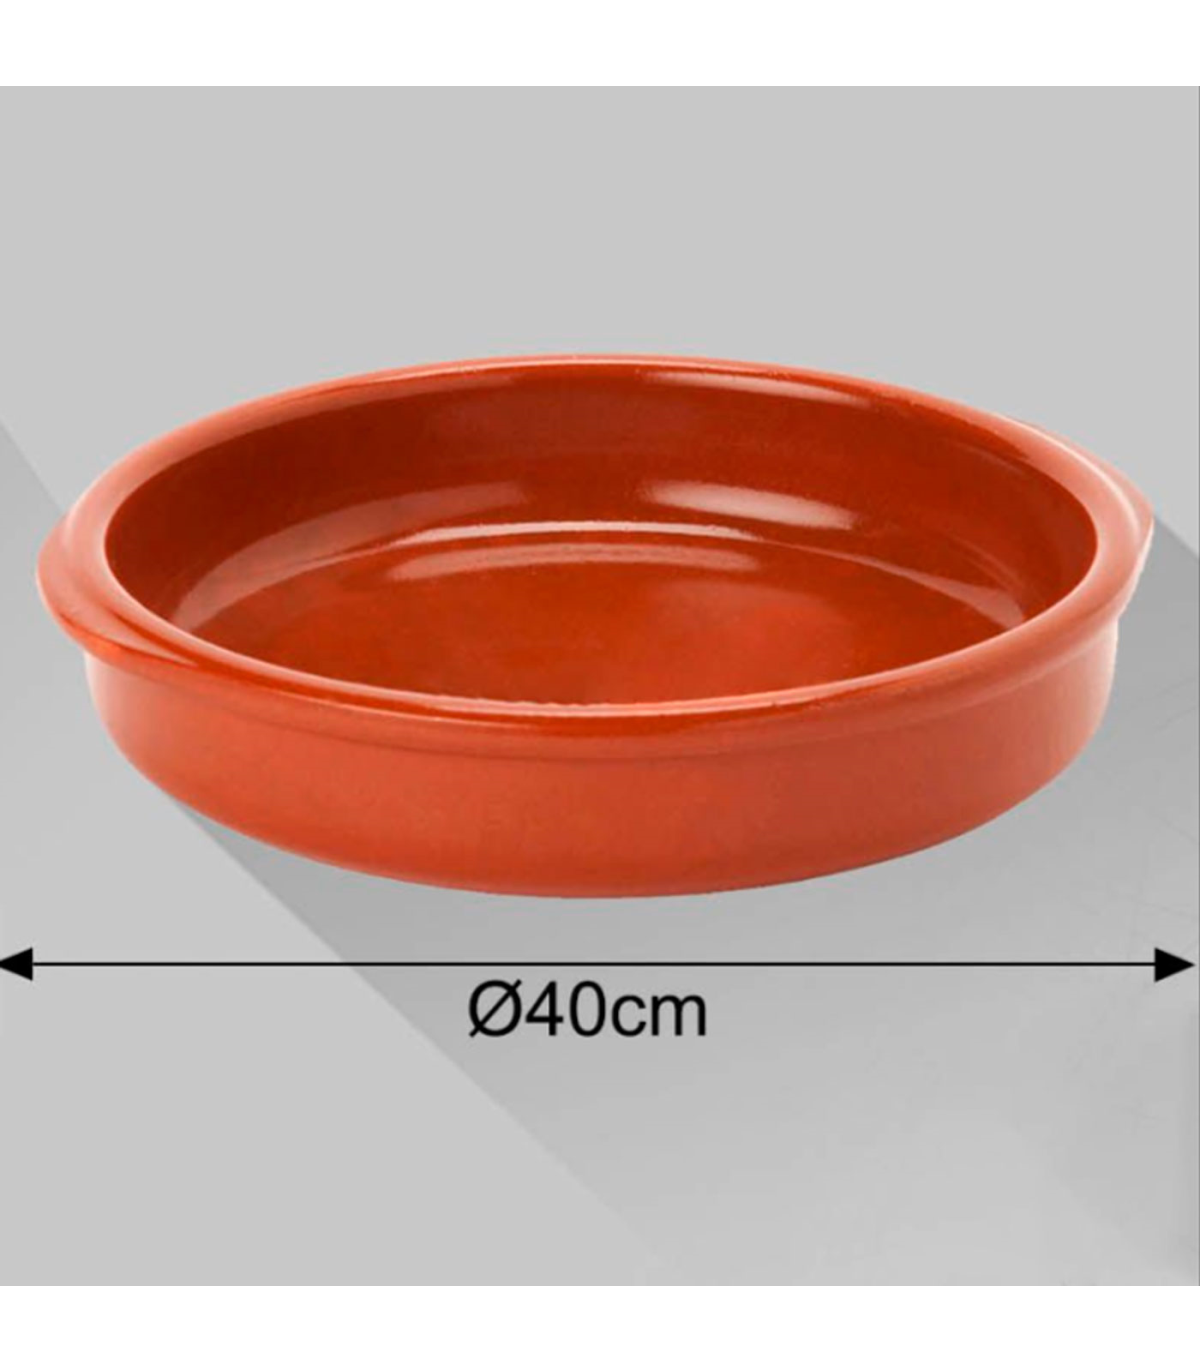 Tradineur - Pack de 6 Cazuelas redondas de barro - Aptas para vitro y horno  - Ideales para guisos y asados caseros – Ø 26 cm